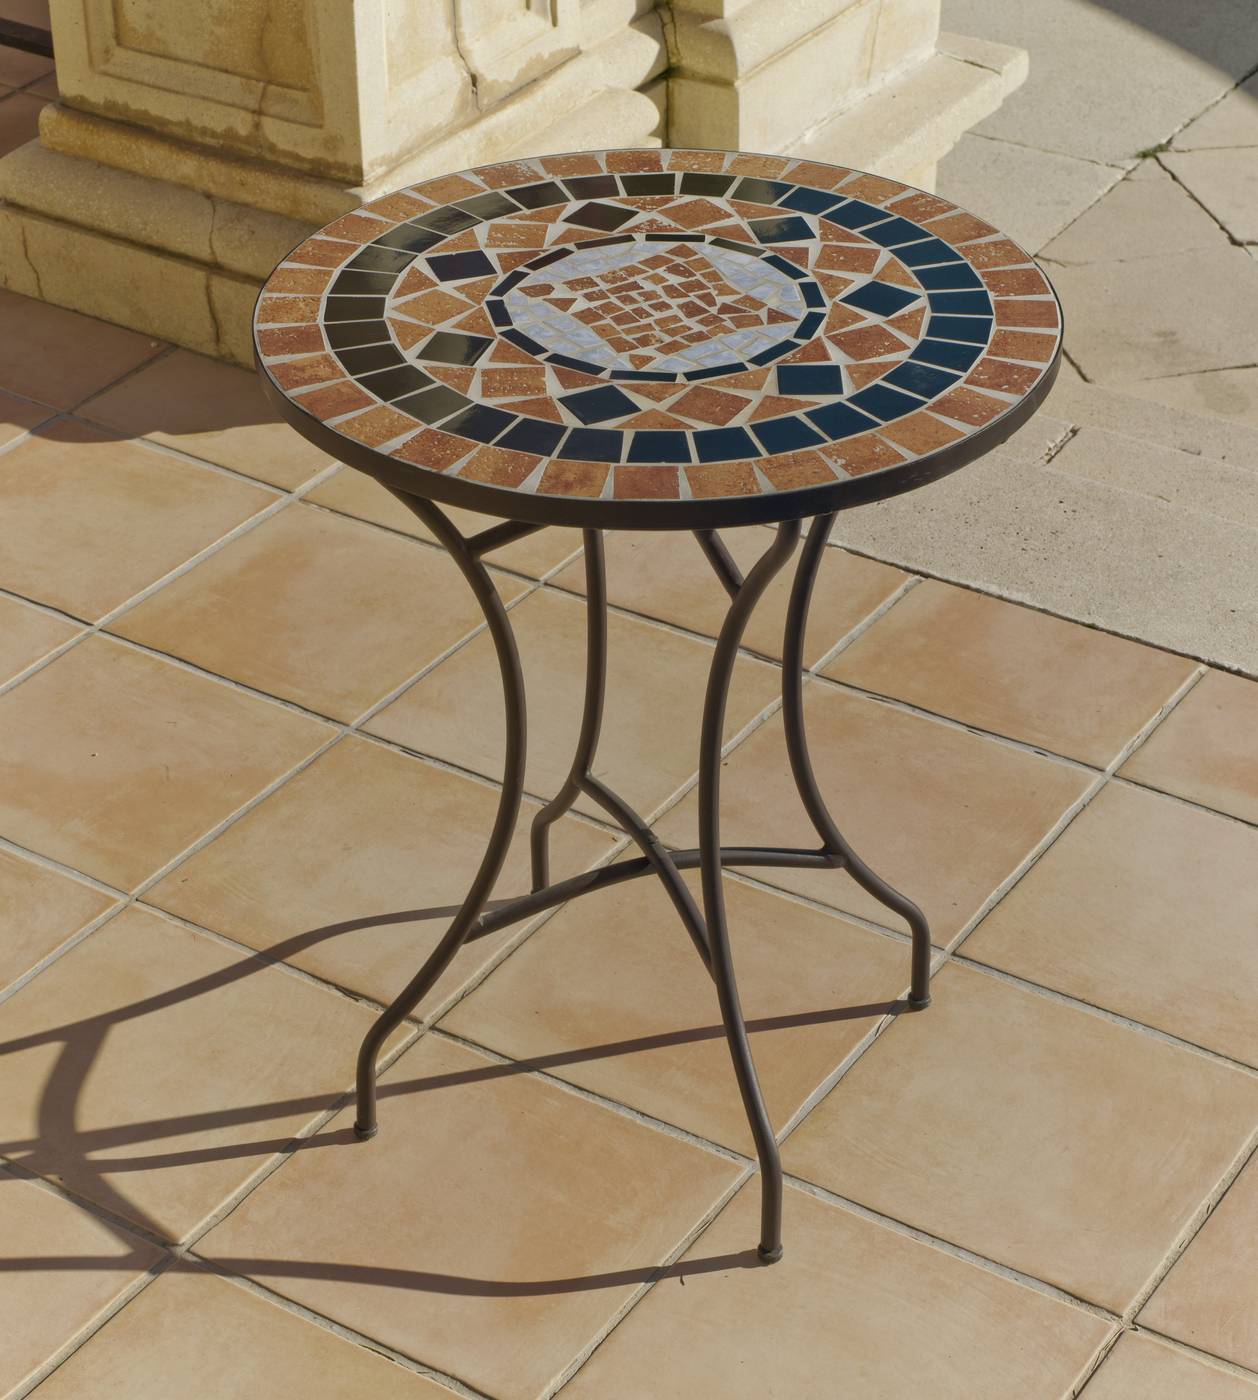 Set Mosaico Yasir-Brasil - Mesa redonda de forja color bronce, con tablero mosaico de 60 cm, + 2 sillones apilables de wicker